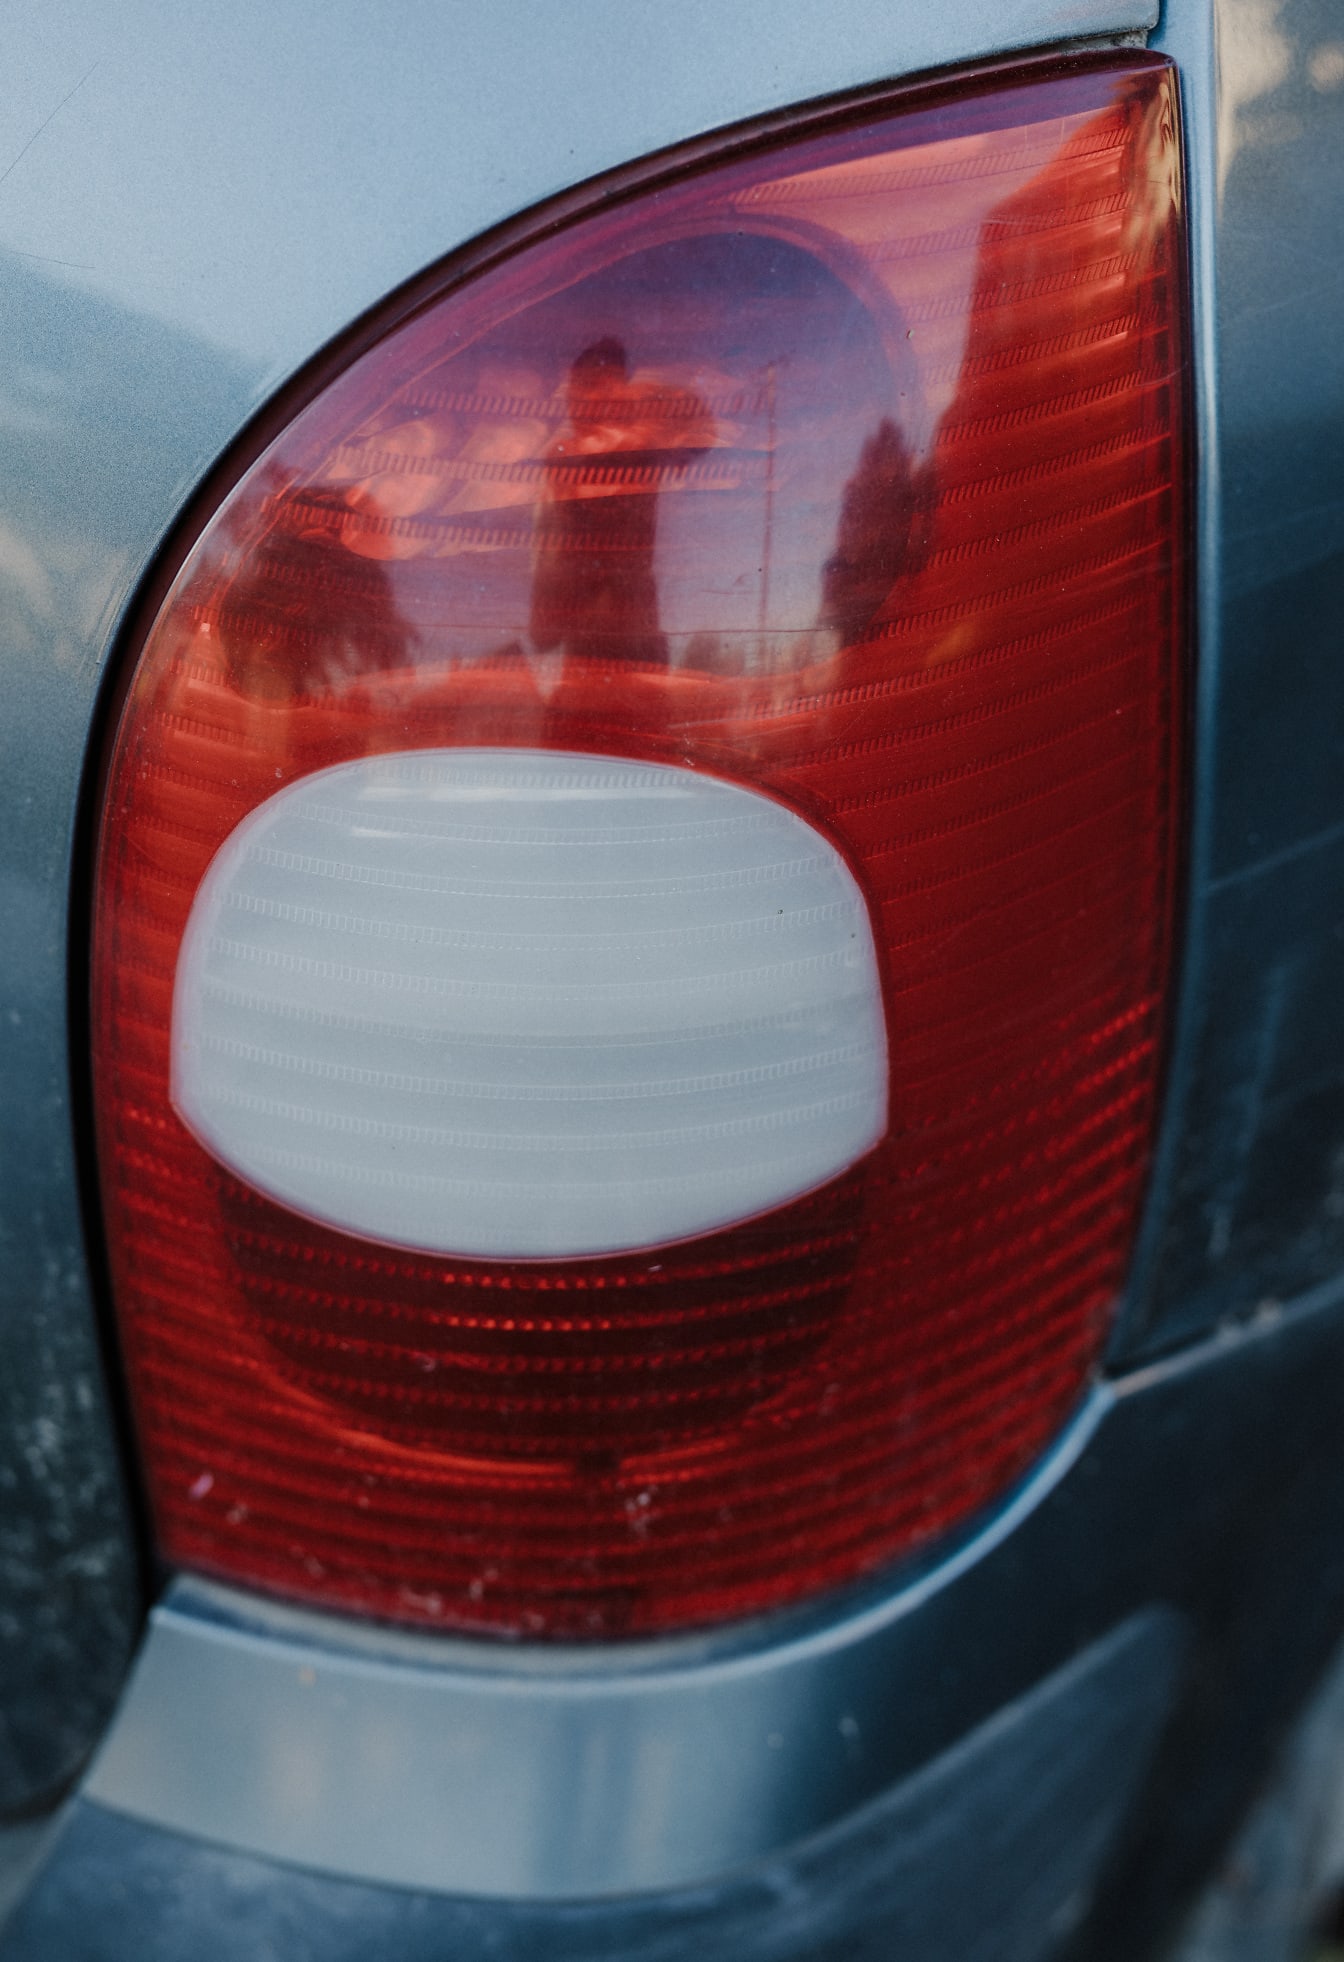 Detalle de la luz trasera del vehículo con plástico blanco y rojo oscuro